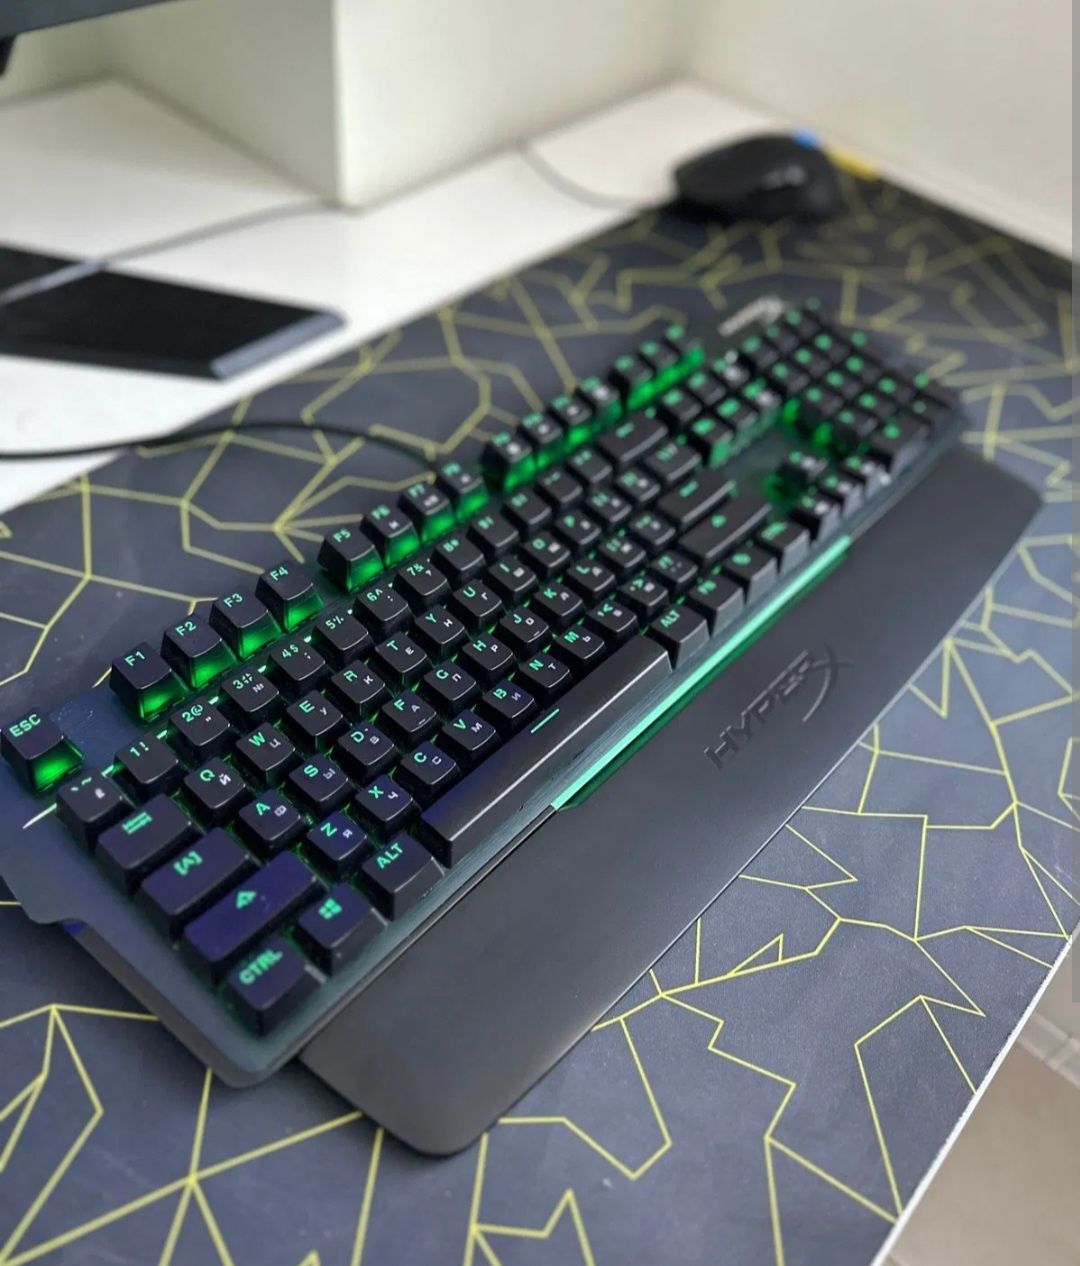 Механическая игровая клавиатура HyperX Alloy MKW100 с RGB подсветкой